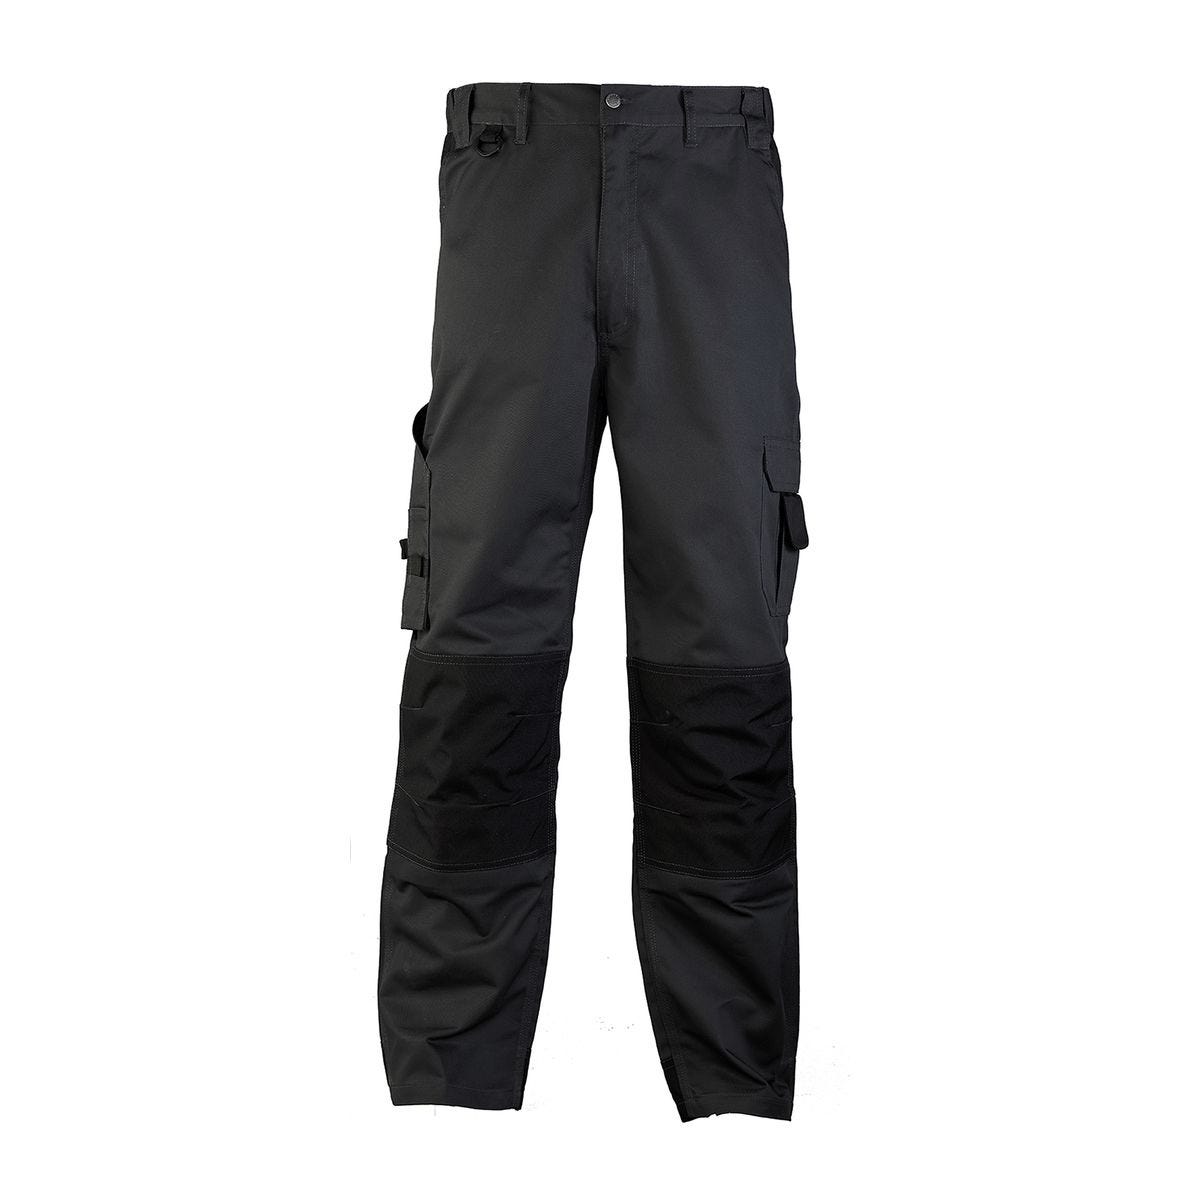 Pantalon CLASS gris foncé - COVERGUARD - Taille 2XL 0